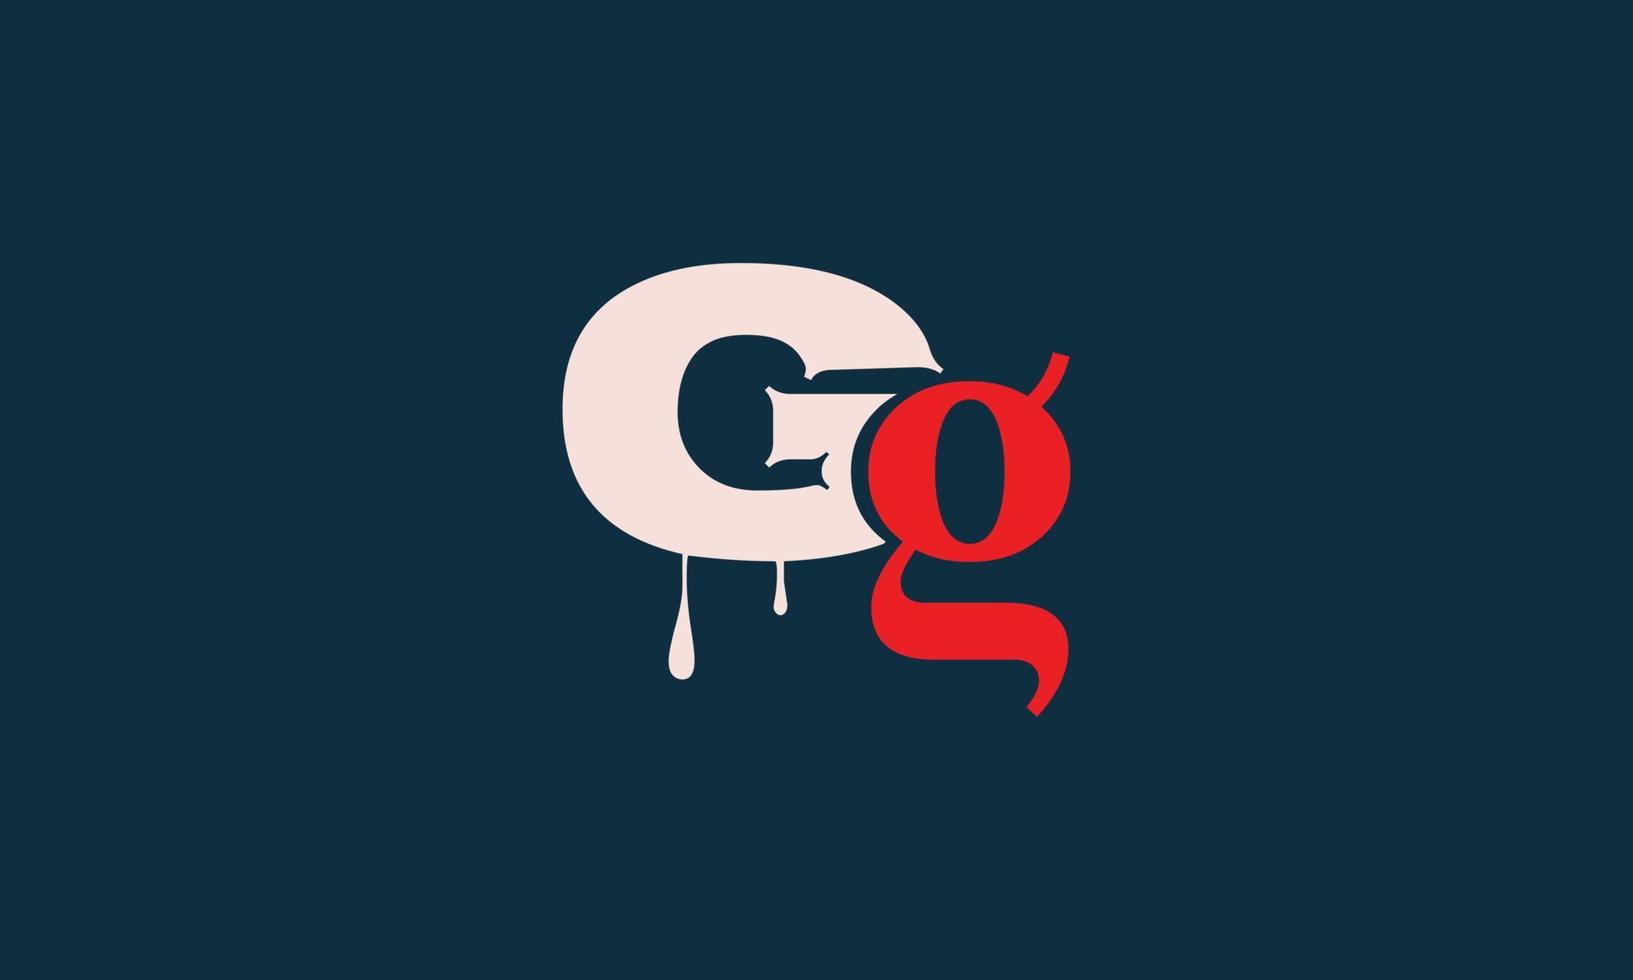 alfabeto letras iniciales monograma logo gg, g y g vector